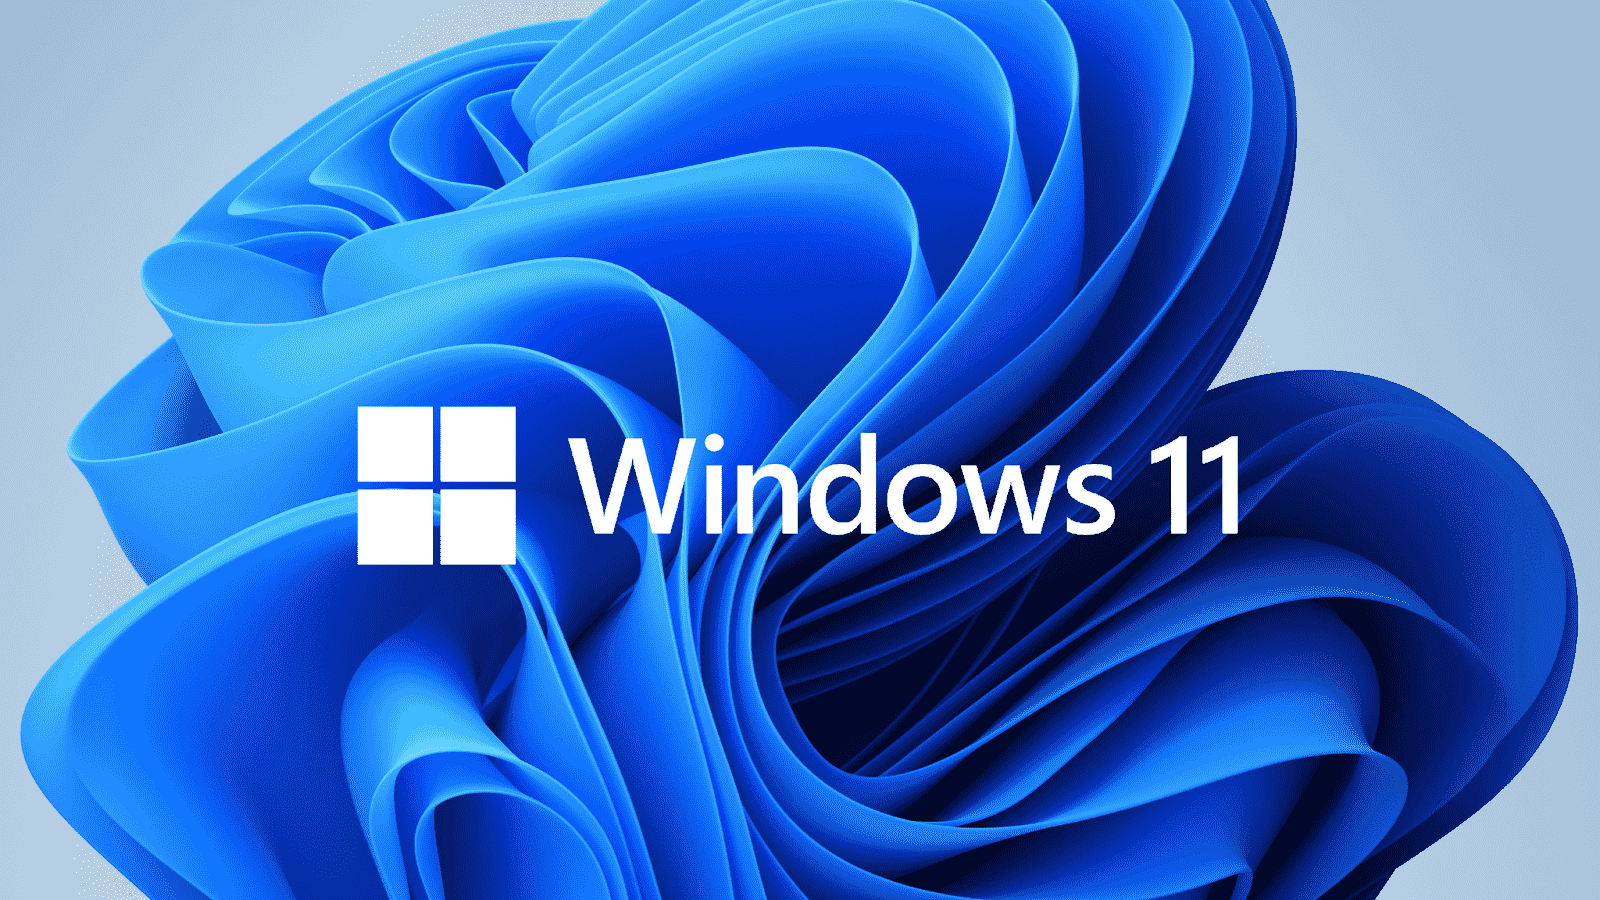 Windows 11 - Giao diện mới, cập nhật tính năng mới - Hướng dẫn cài đặt Windows 11 nhanh nhất